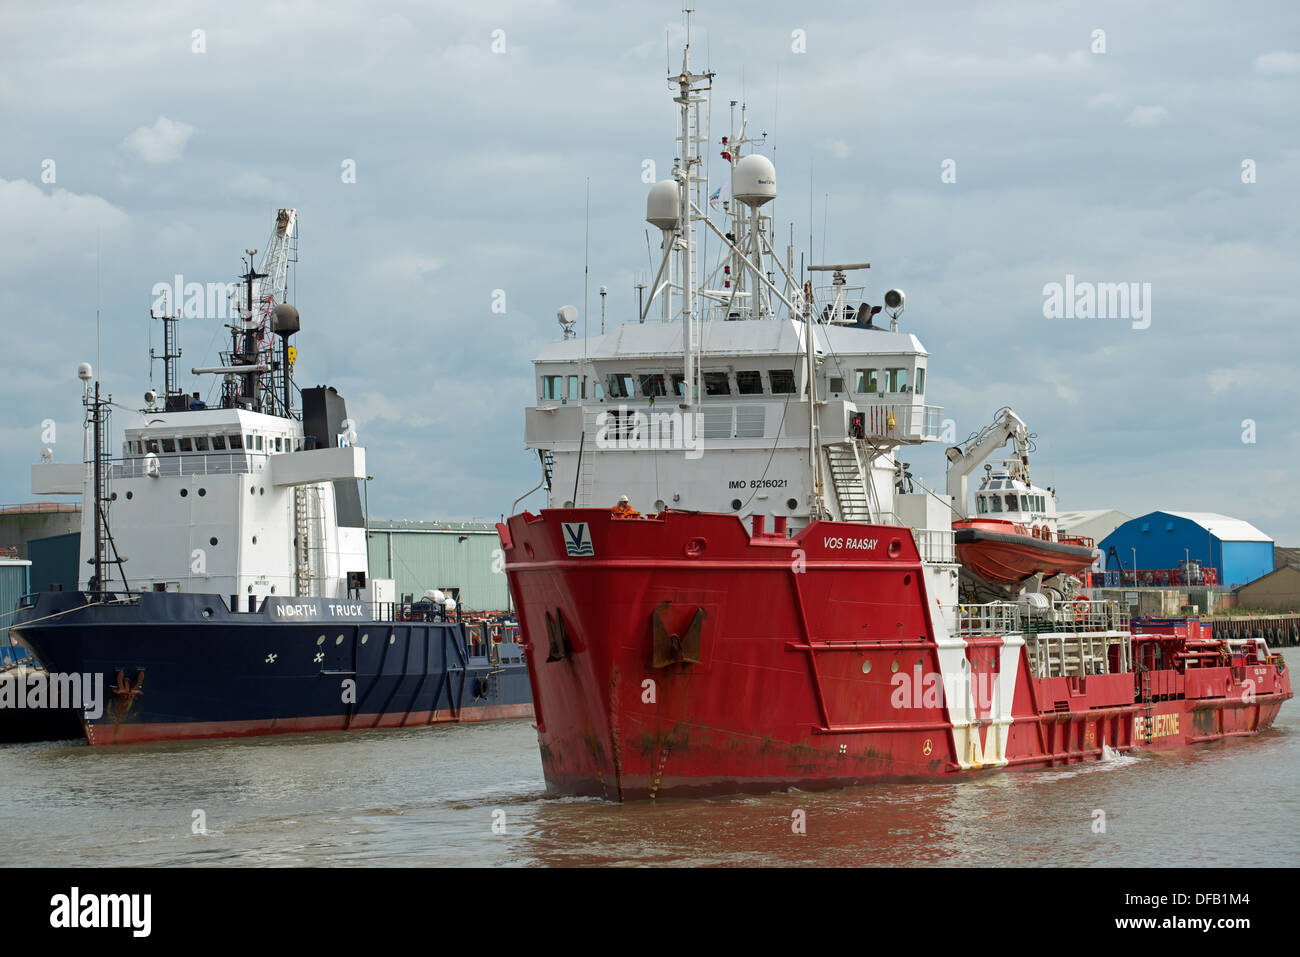 North Sea gas field supply ship 'Vos Raasay', river Yare, Great Yarmouth, Norfolk, UK. Stock Photo